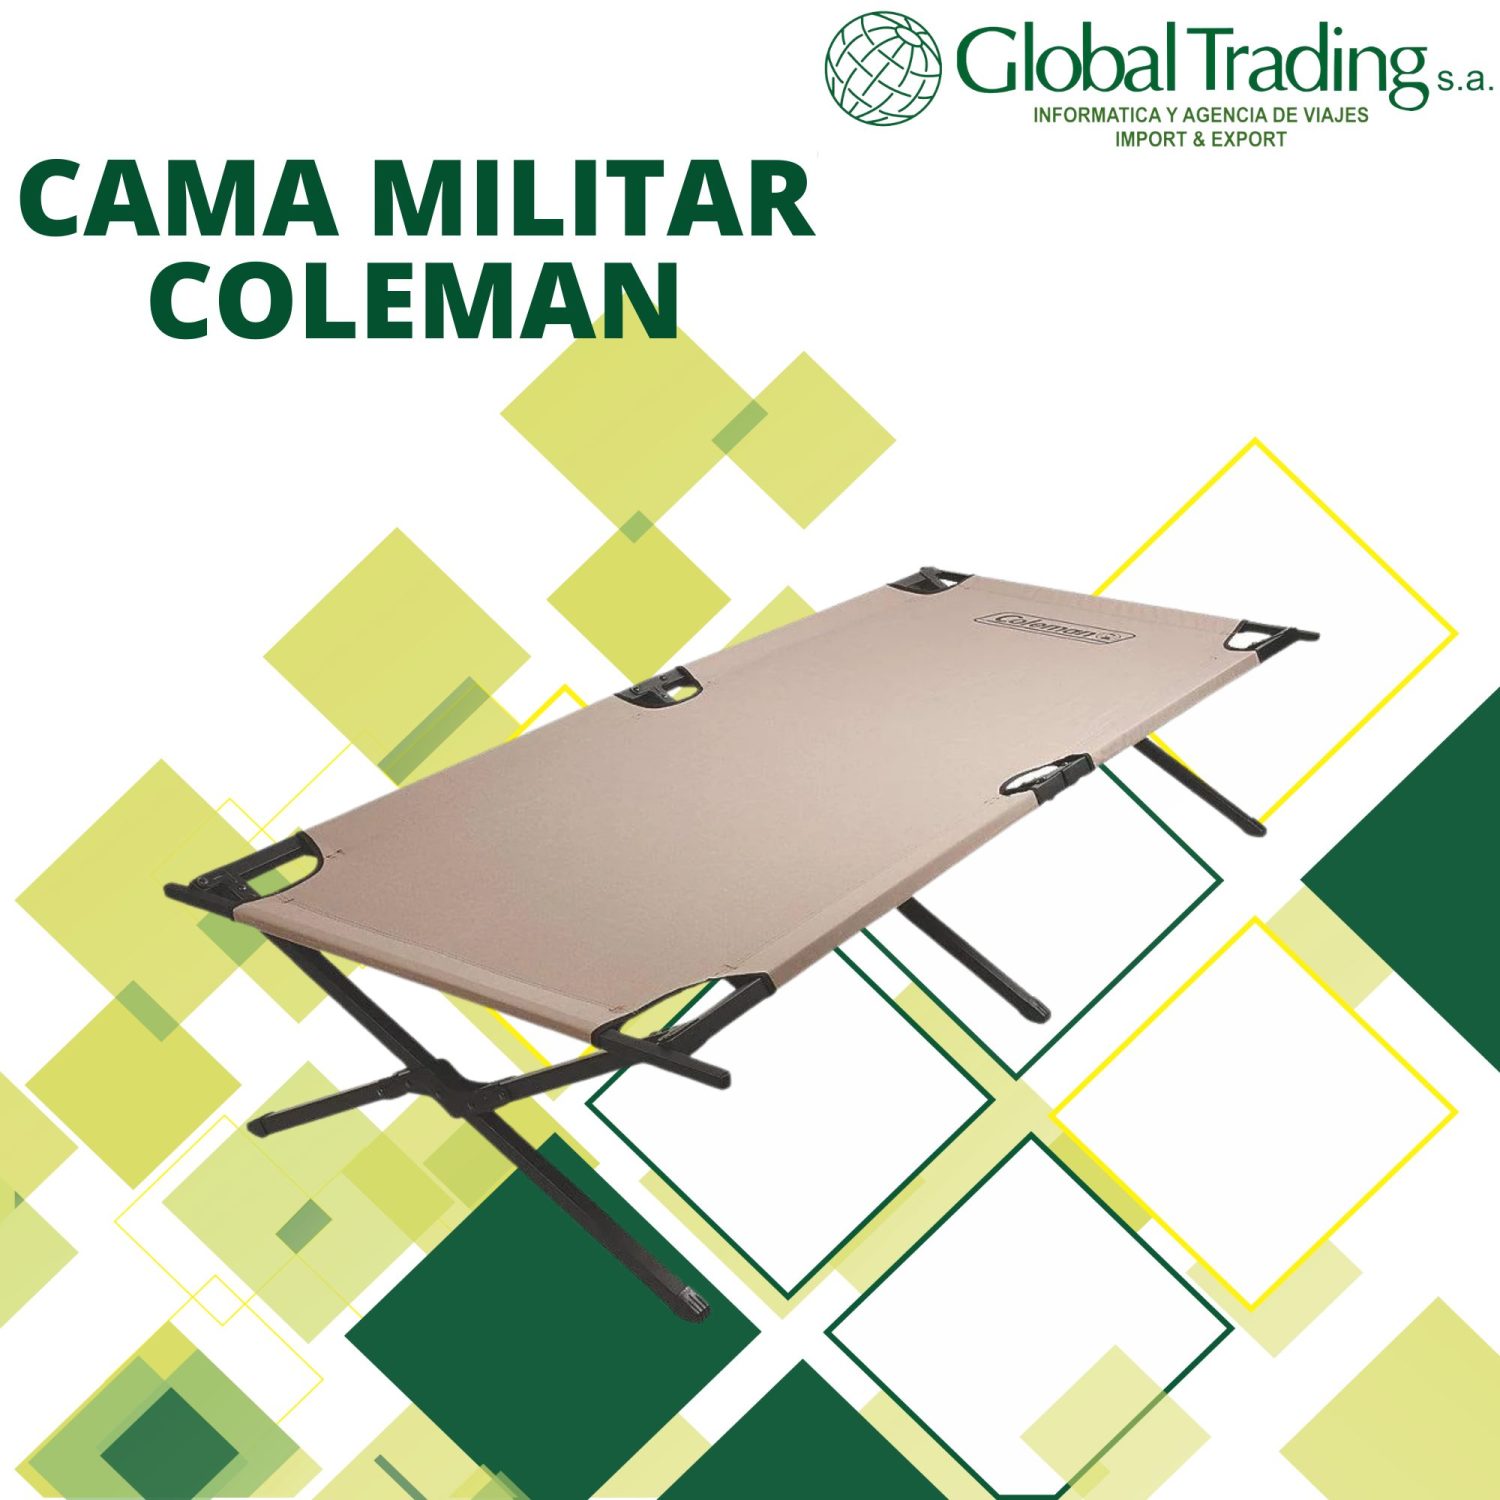 Cama Tipo Militar Coleman para Camping - Global Trading S.A.